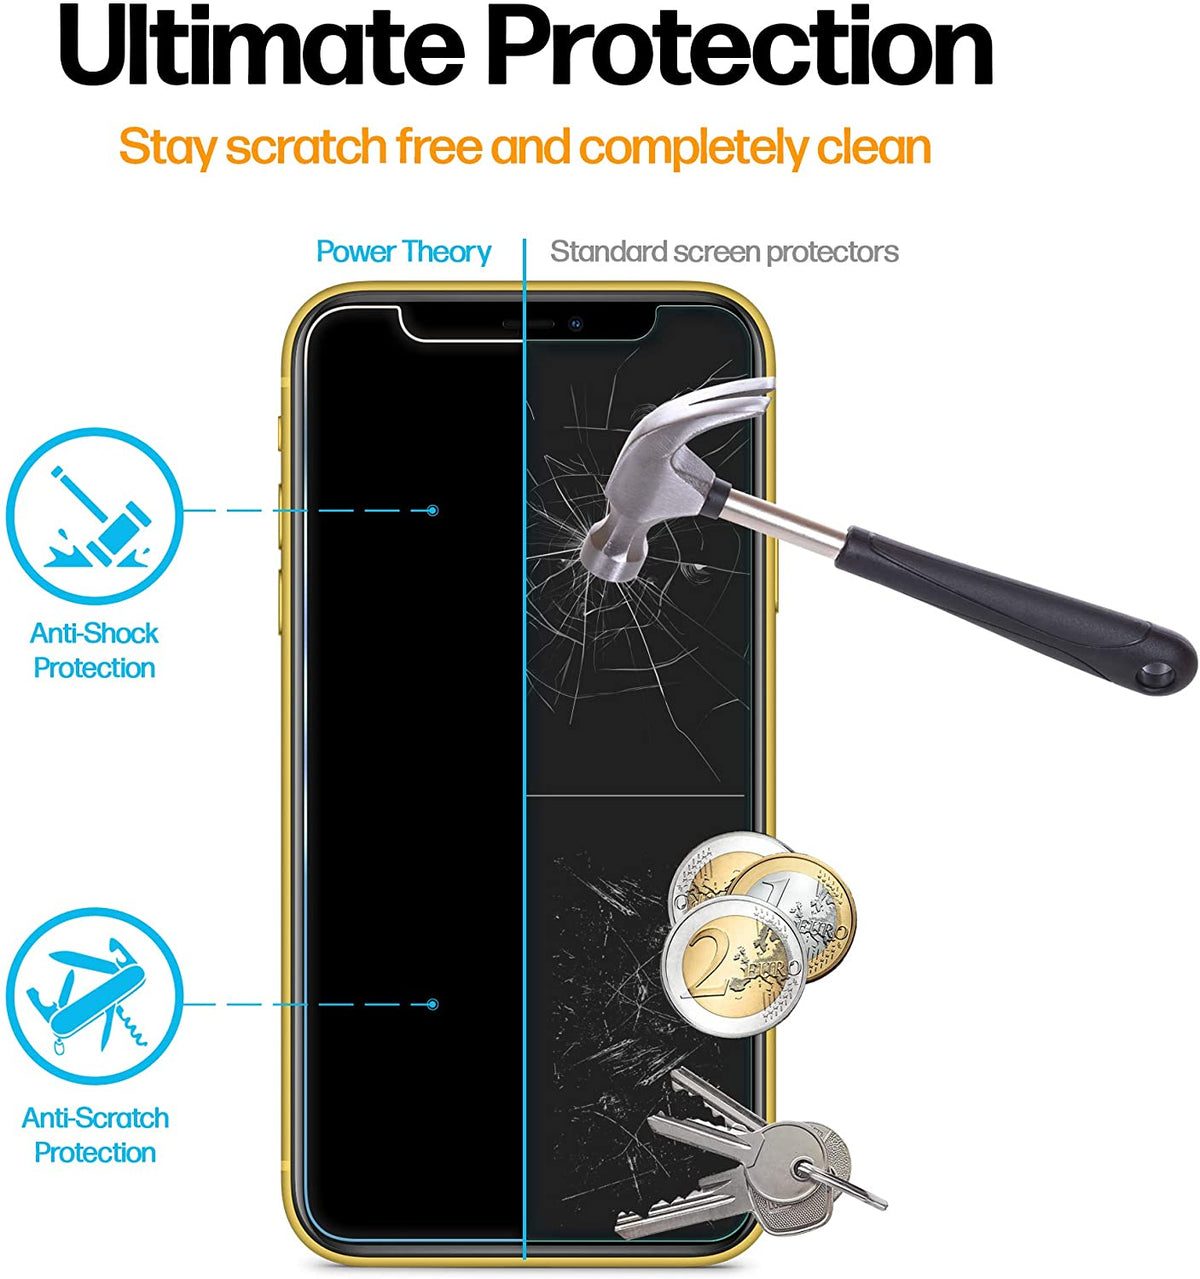 Power Theory Sichtschutz Schutzfolie kompatibel mit iPhone 11/iPhone XR [2 Stück] - Sichtschutzfolie mit Schablone, Schutzfolie, Glas Folie, Displayschutzfolie, Schutzglas Cover